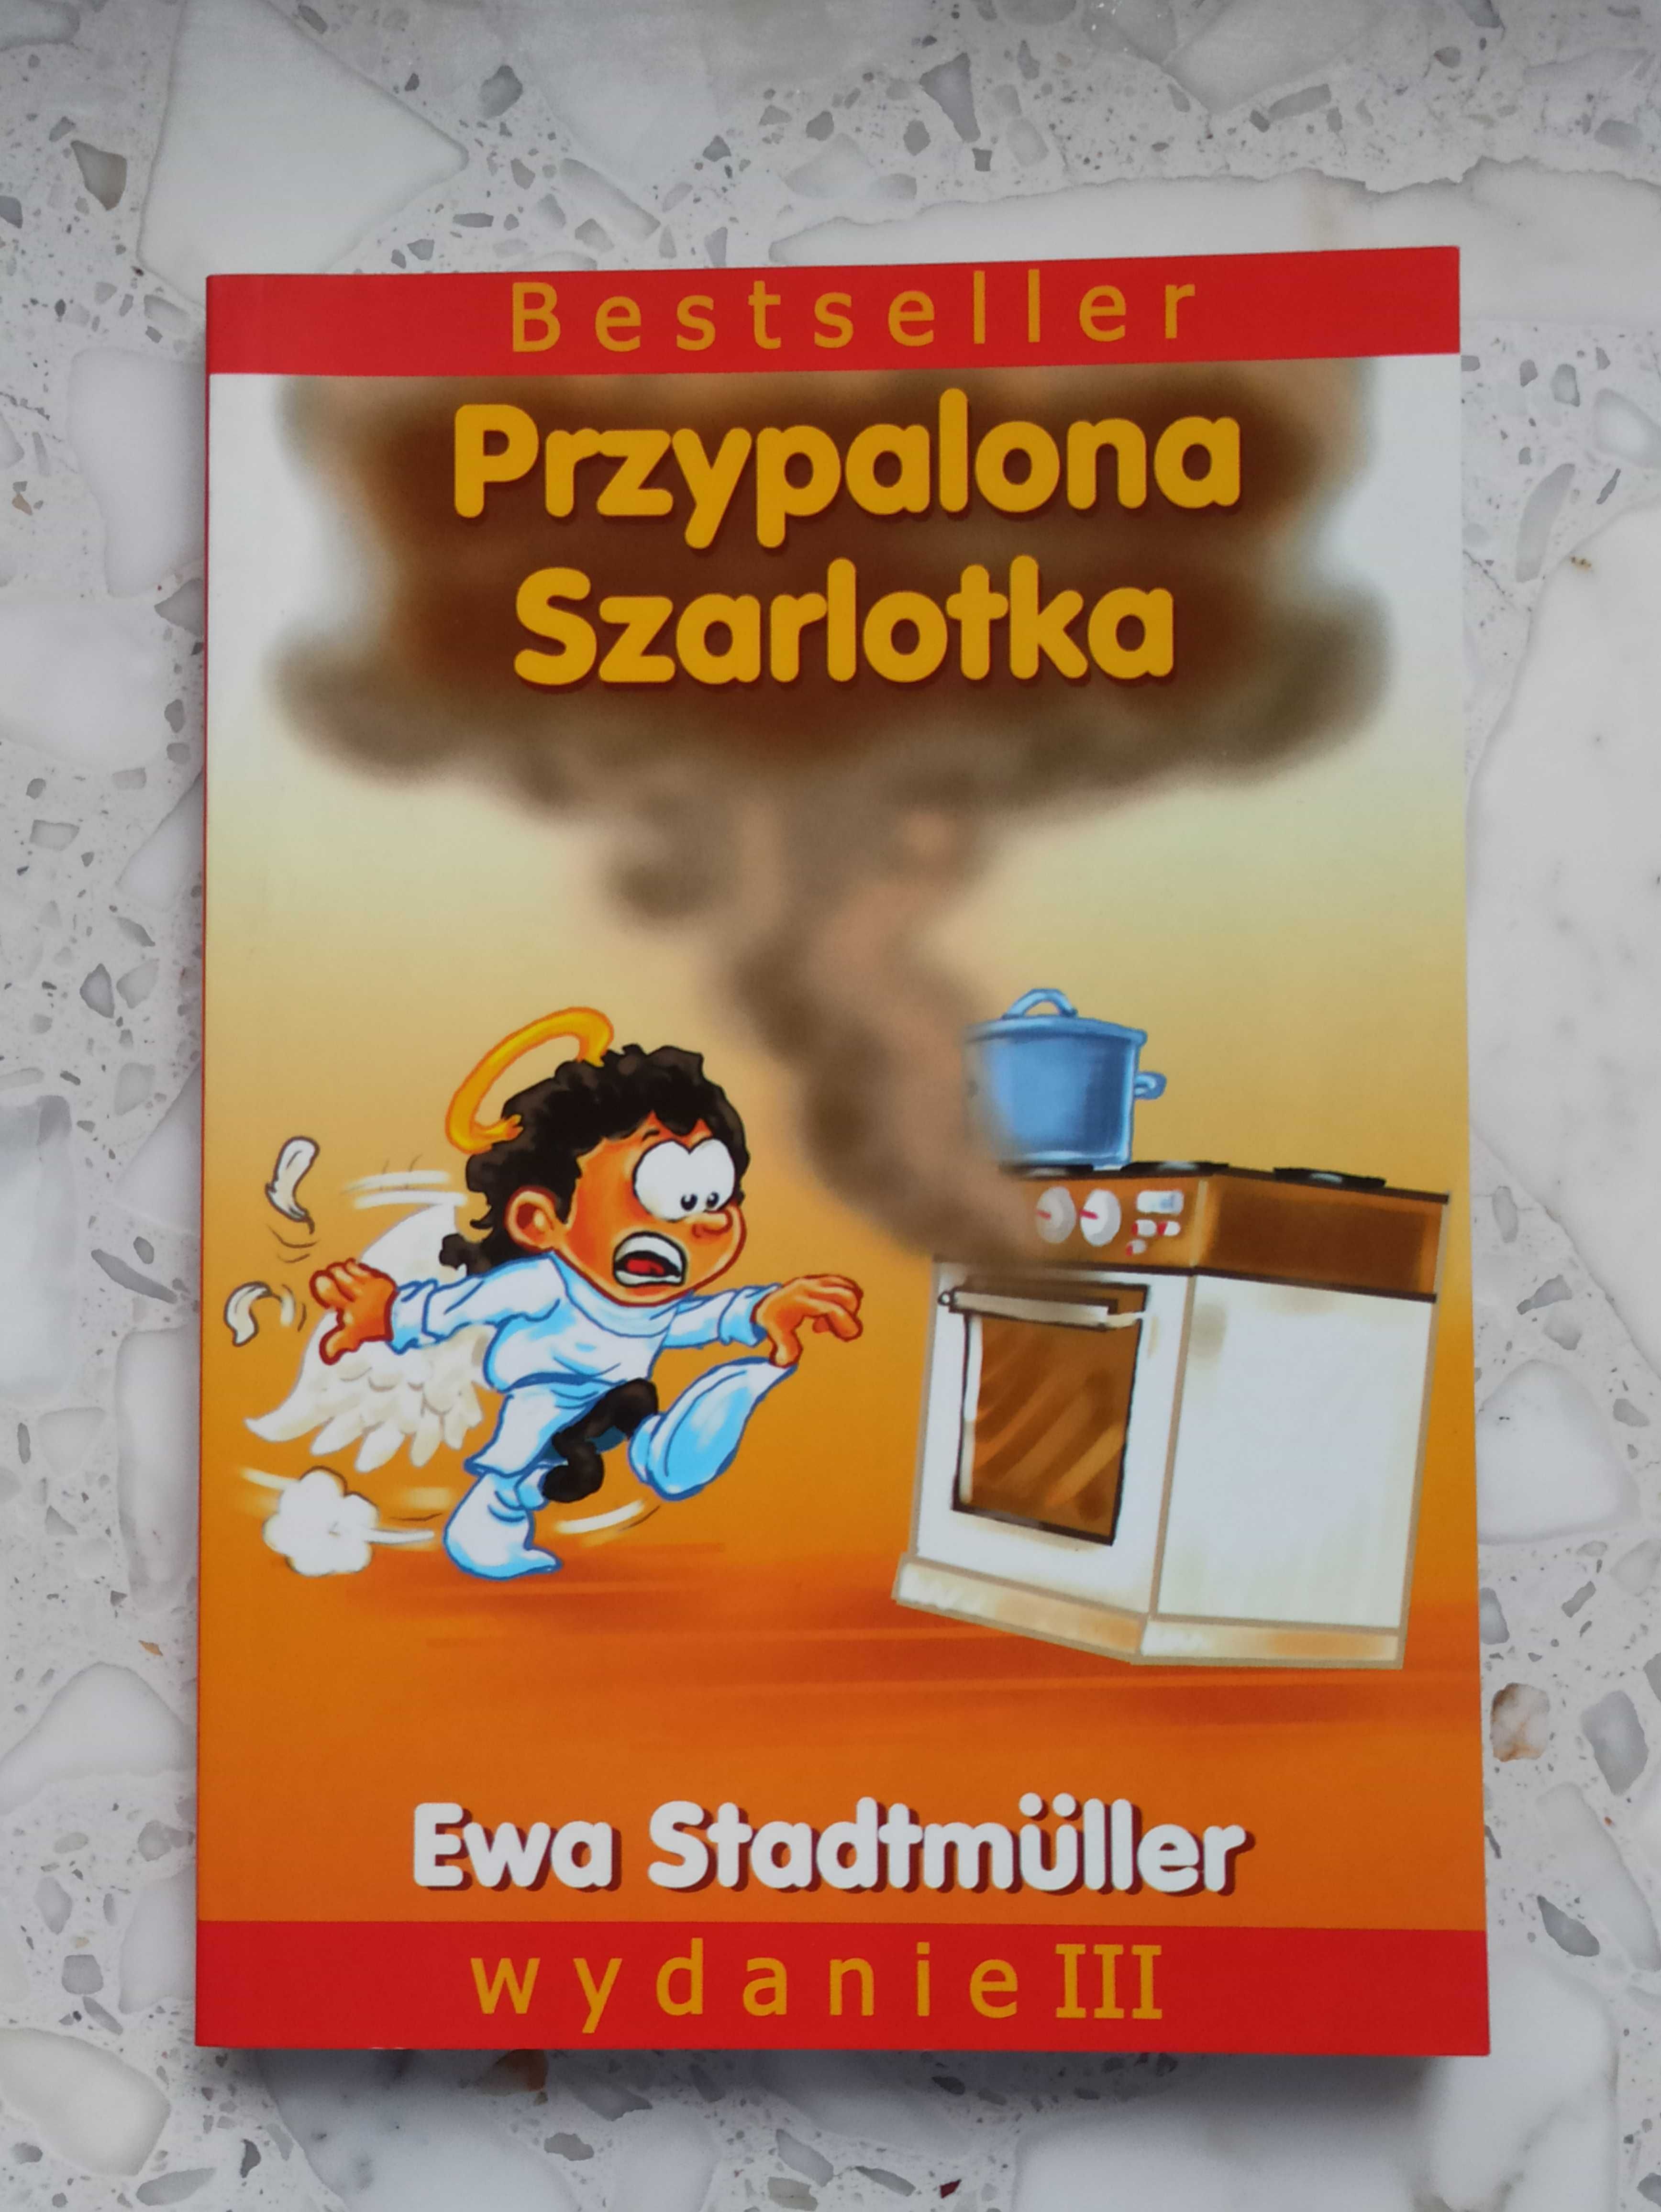 Bestseller "Przypalona Szarlotka" Ewa Stadtmuller, 74 opowiadań